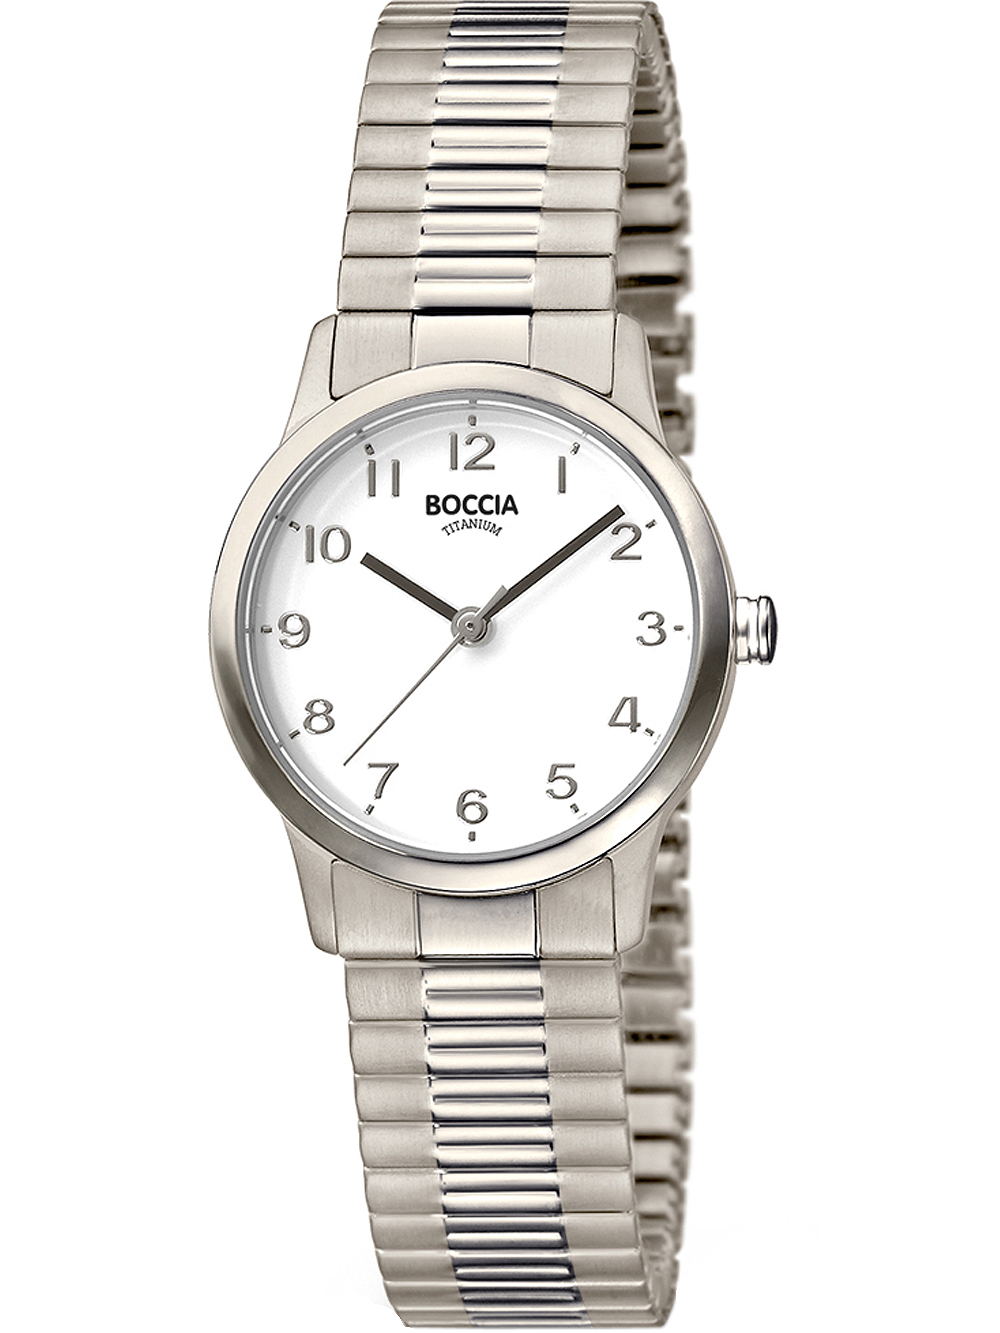 Dámské hodinky Boccia 3318-01 ladies watch titanium 27mm 5ATM